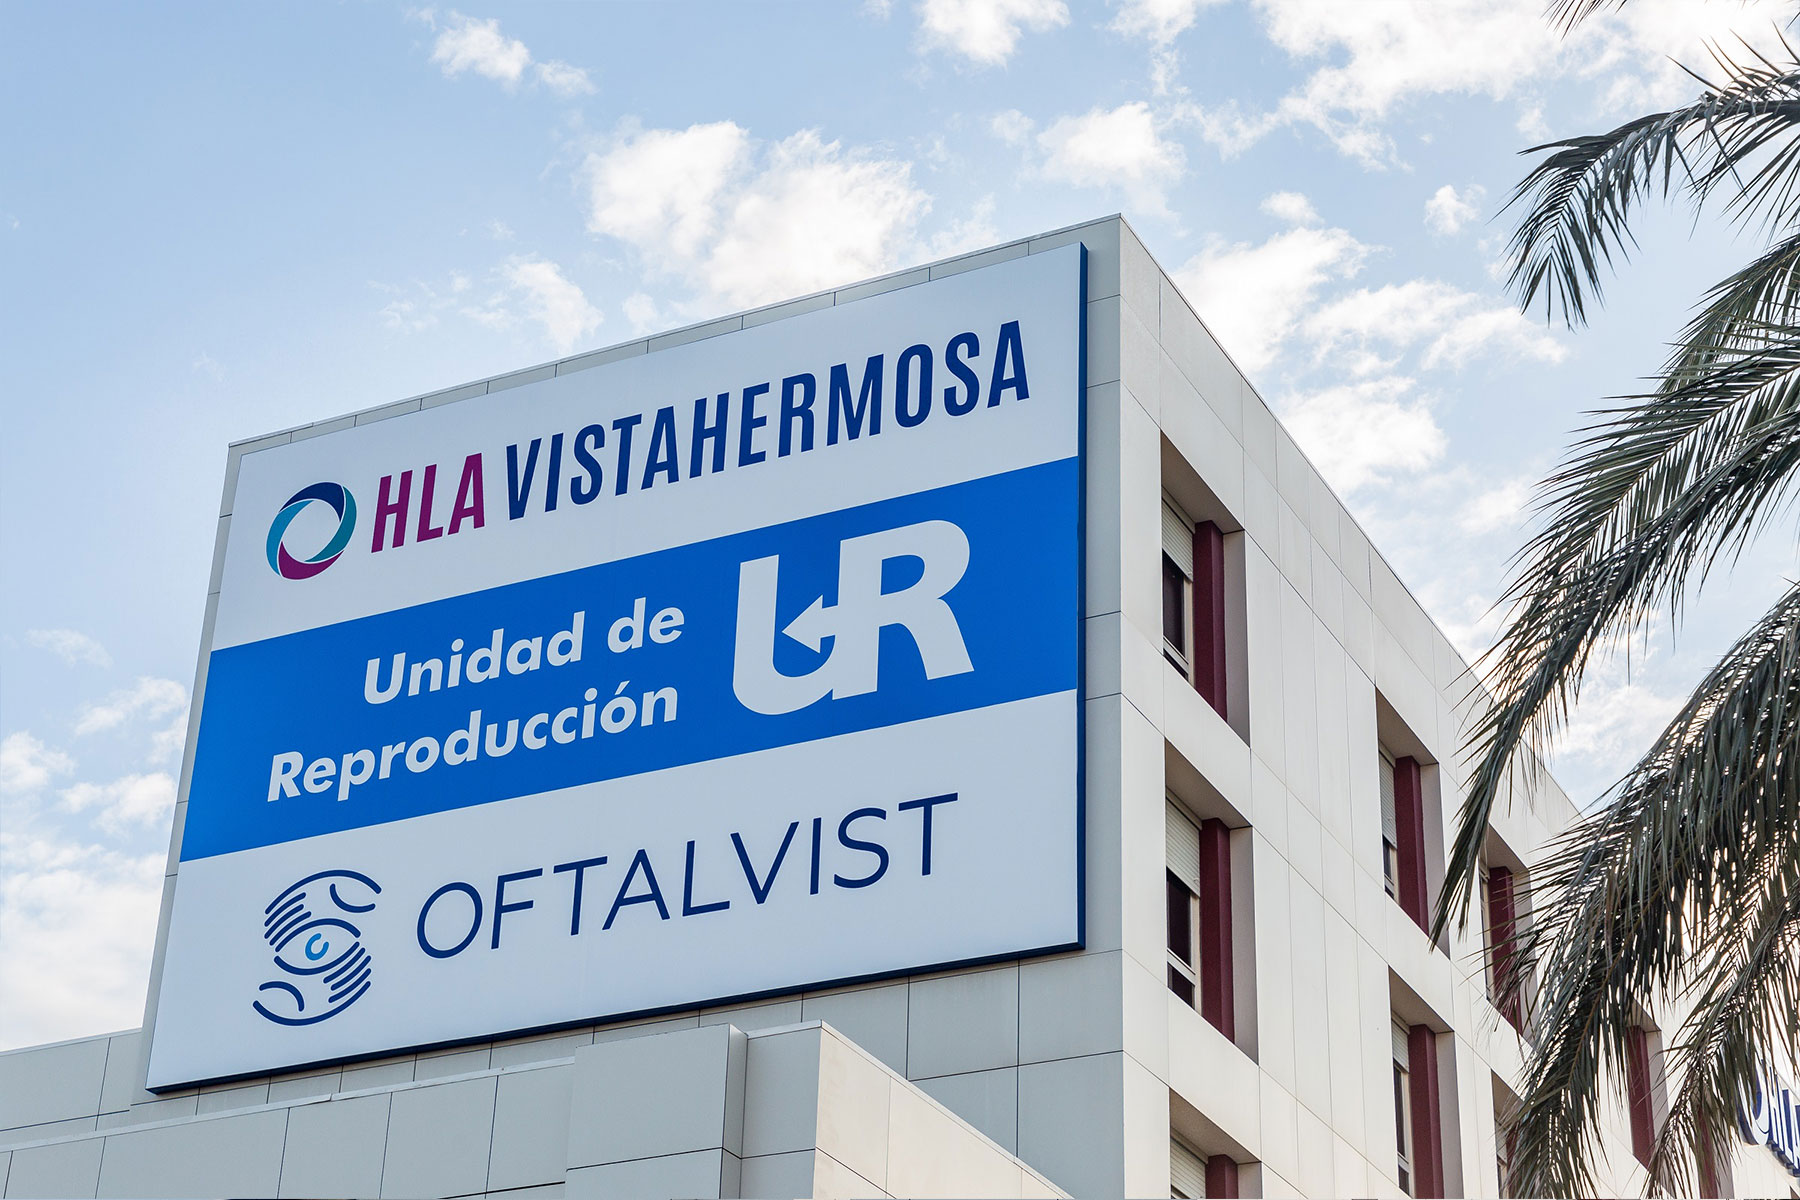 Pour la troisième année consécutive, HLA Vistahermosa est reconnu comme le meilleur hôpital privé d’Alicante.